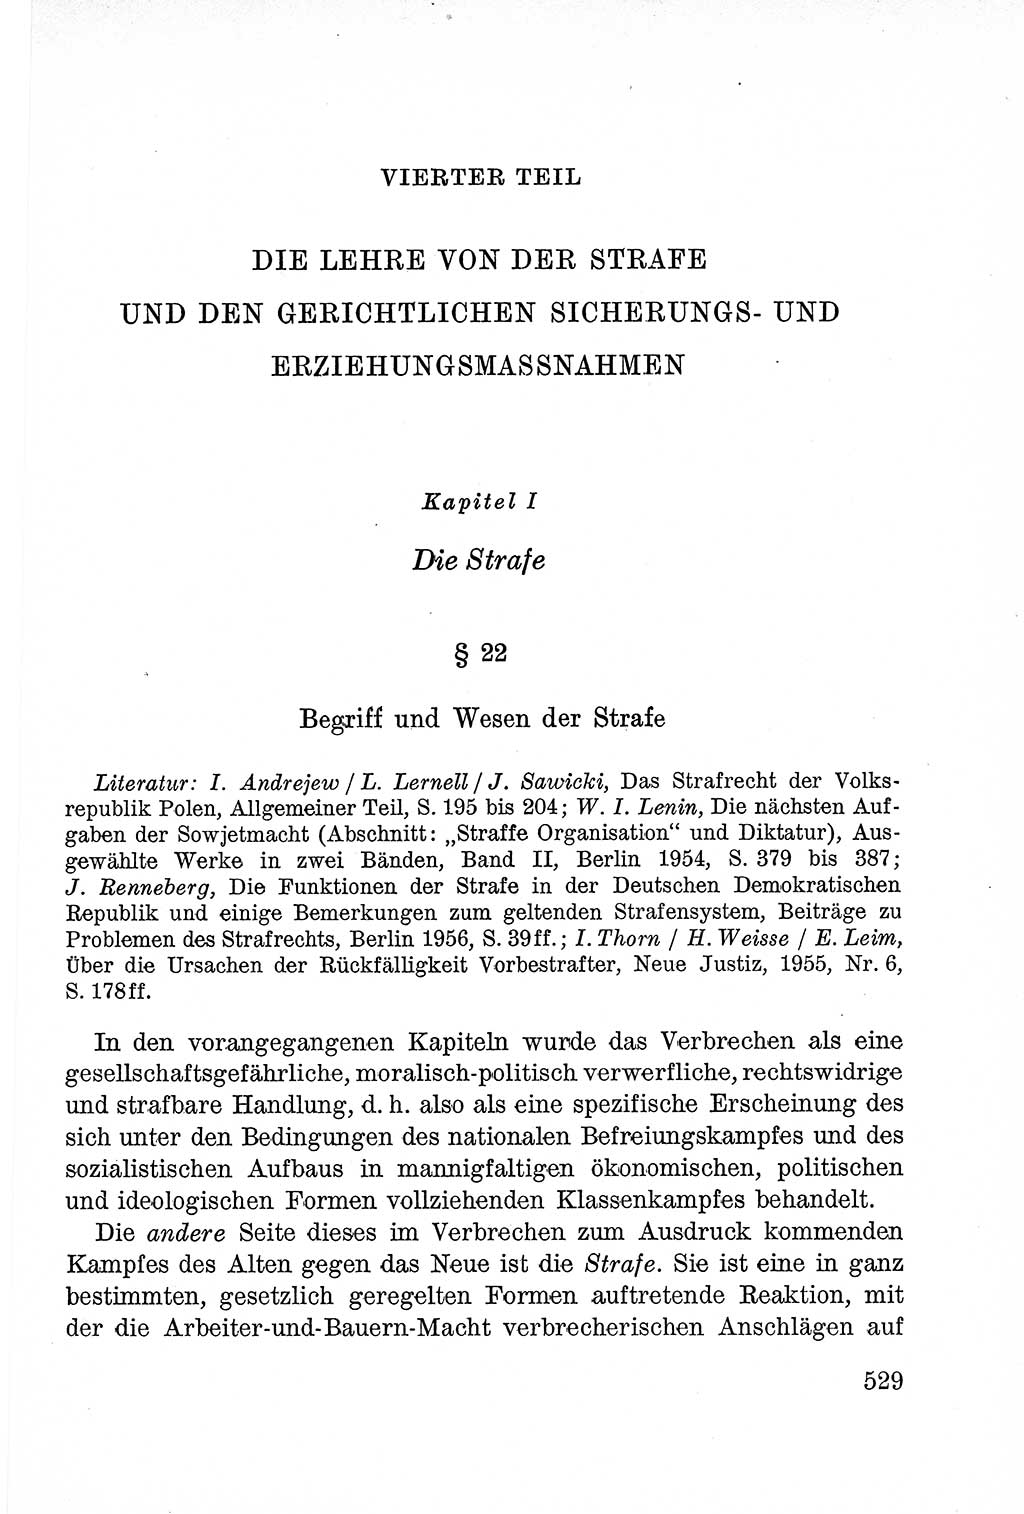 Lehrbuch des Strafrechts der Deutschen Demokratischen Republik (DDR), Allgemeiner Teil 1957, Seite 529 (Lb. Strafr. DDR AT 1957, S. 529)